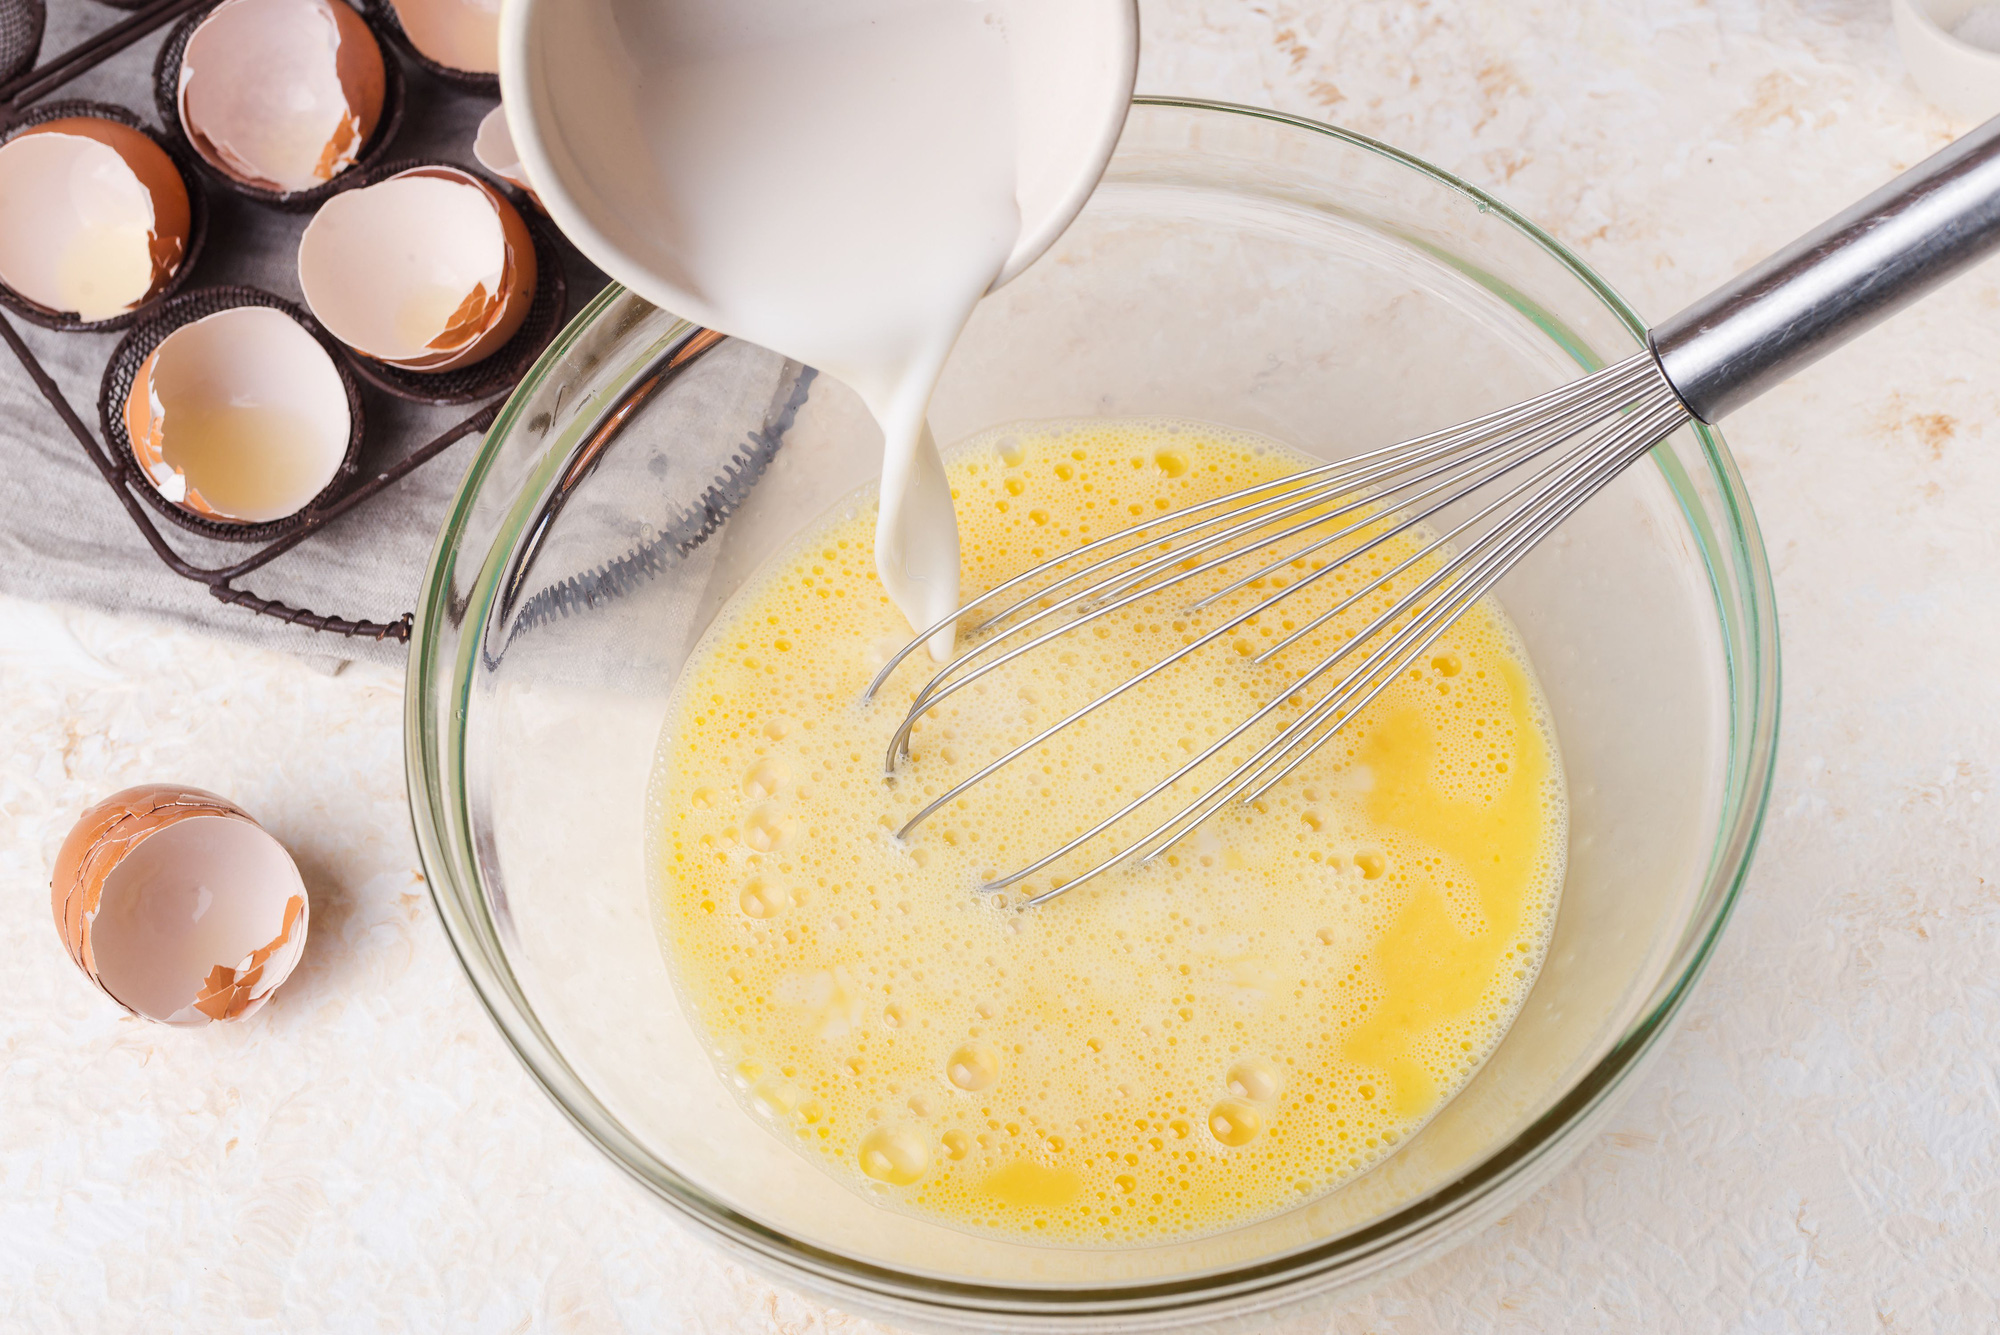 Sữa đậu nành vừa ngon vừa bổ nhưng có 6 điều kiêng kỵ khi uống mà bạn nên tránh mắc phải - Ảnh 3.